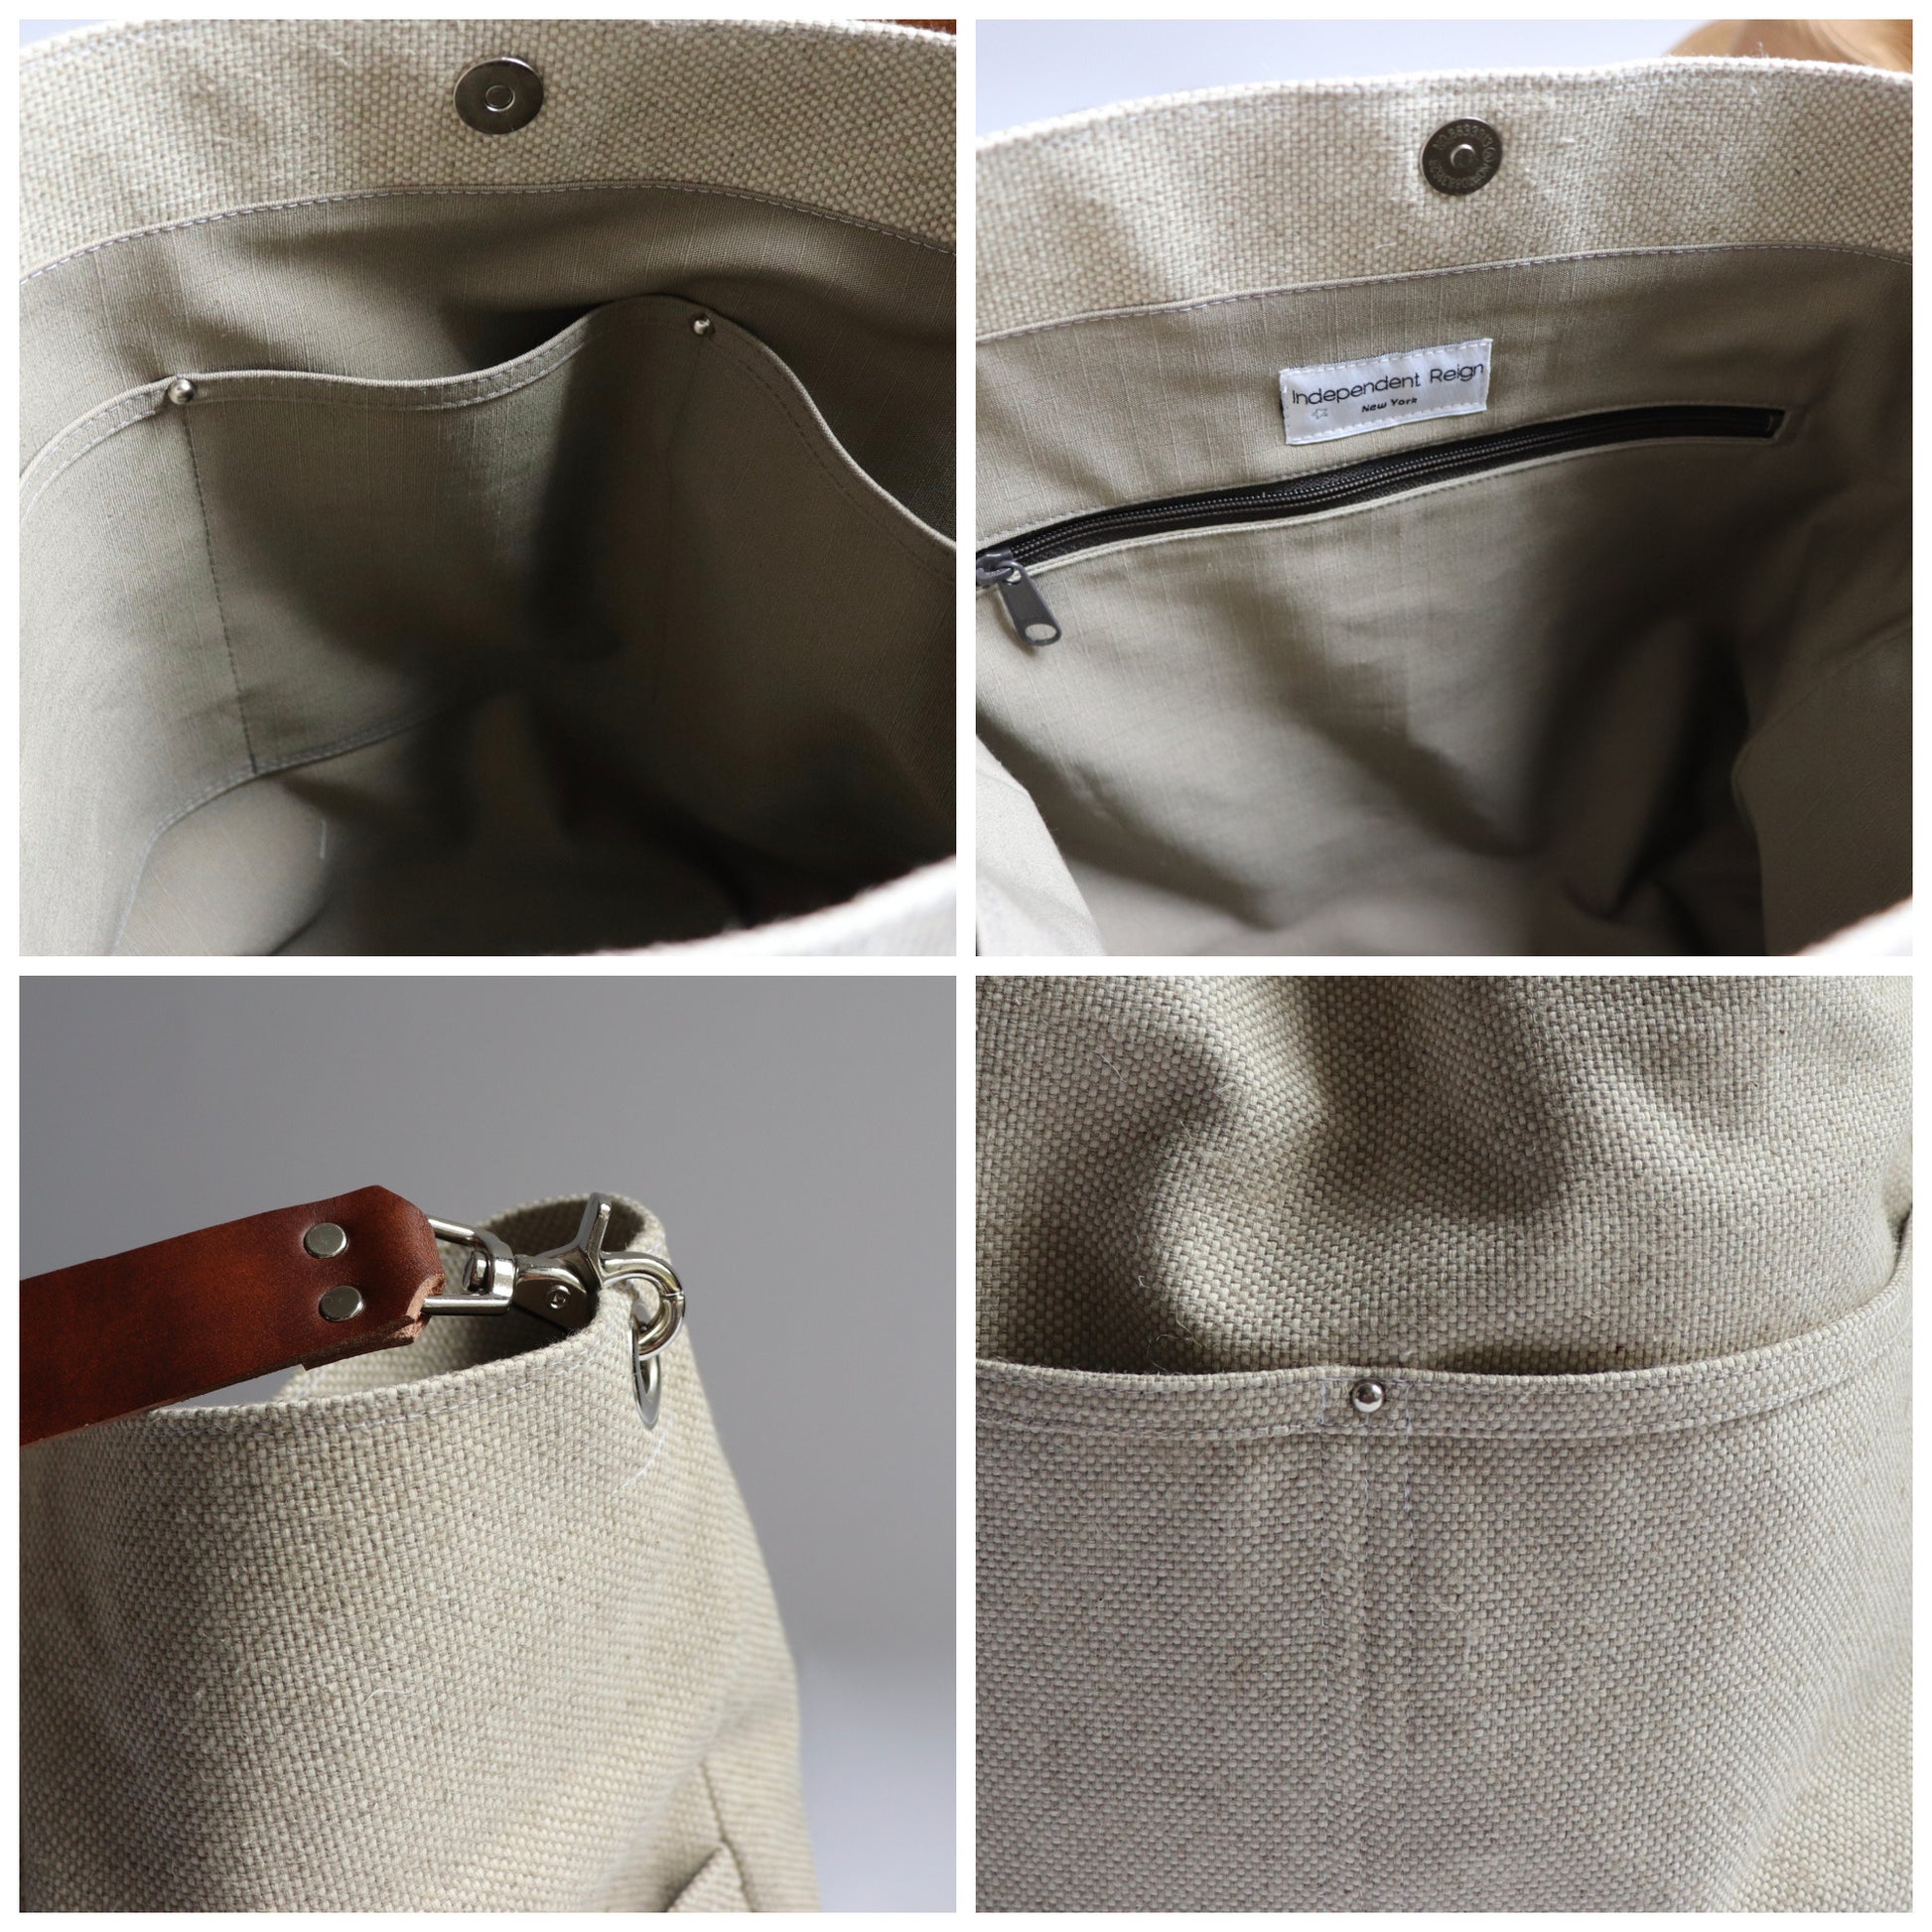 Interior pocket details for woven linen bag